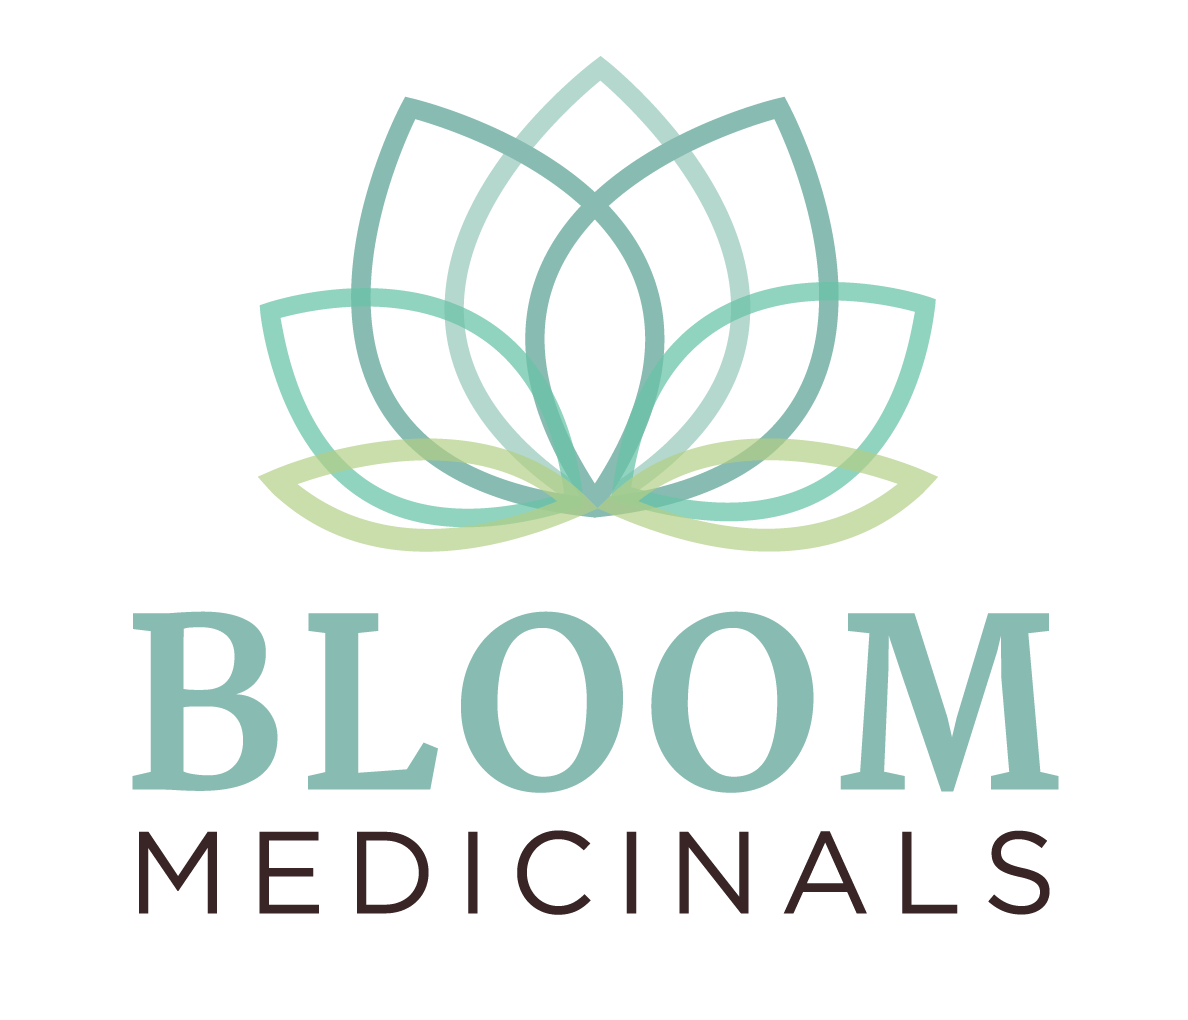 bloom medicinal germantown